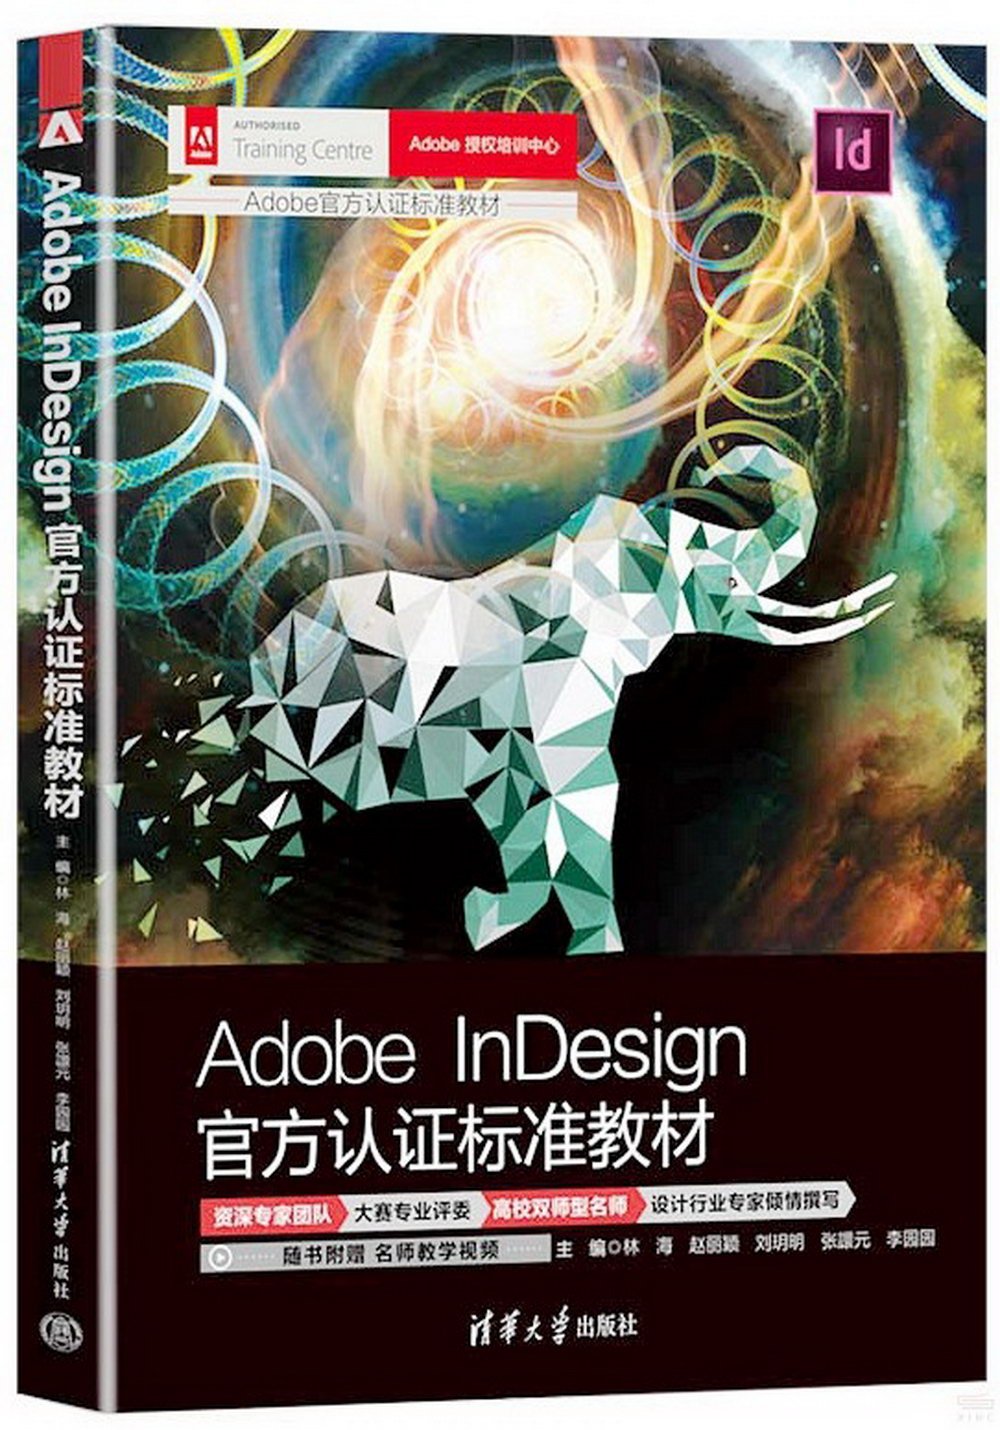 Adobe InDesign官方認證標準教材